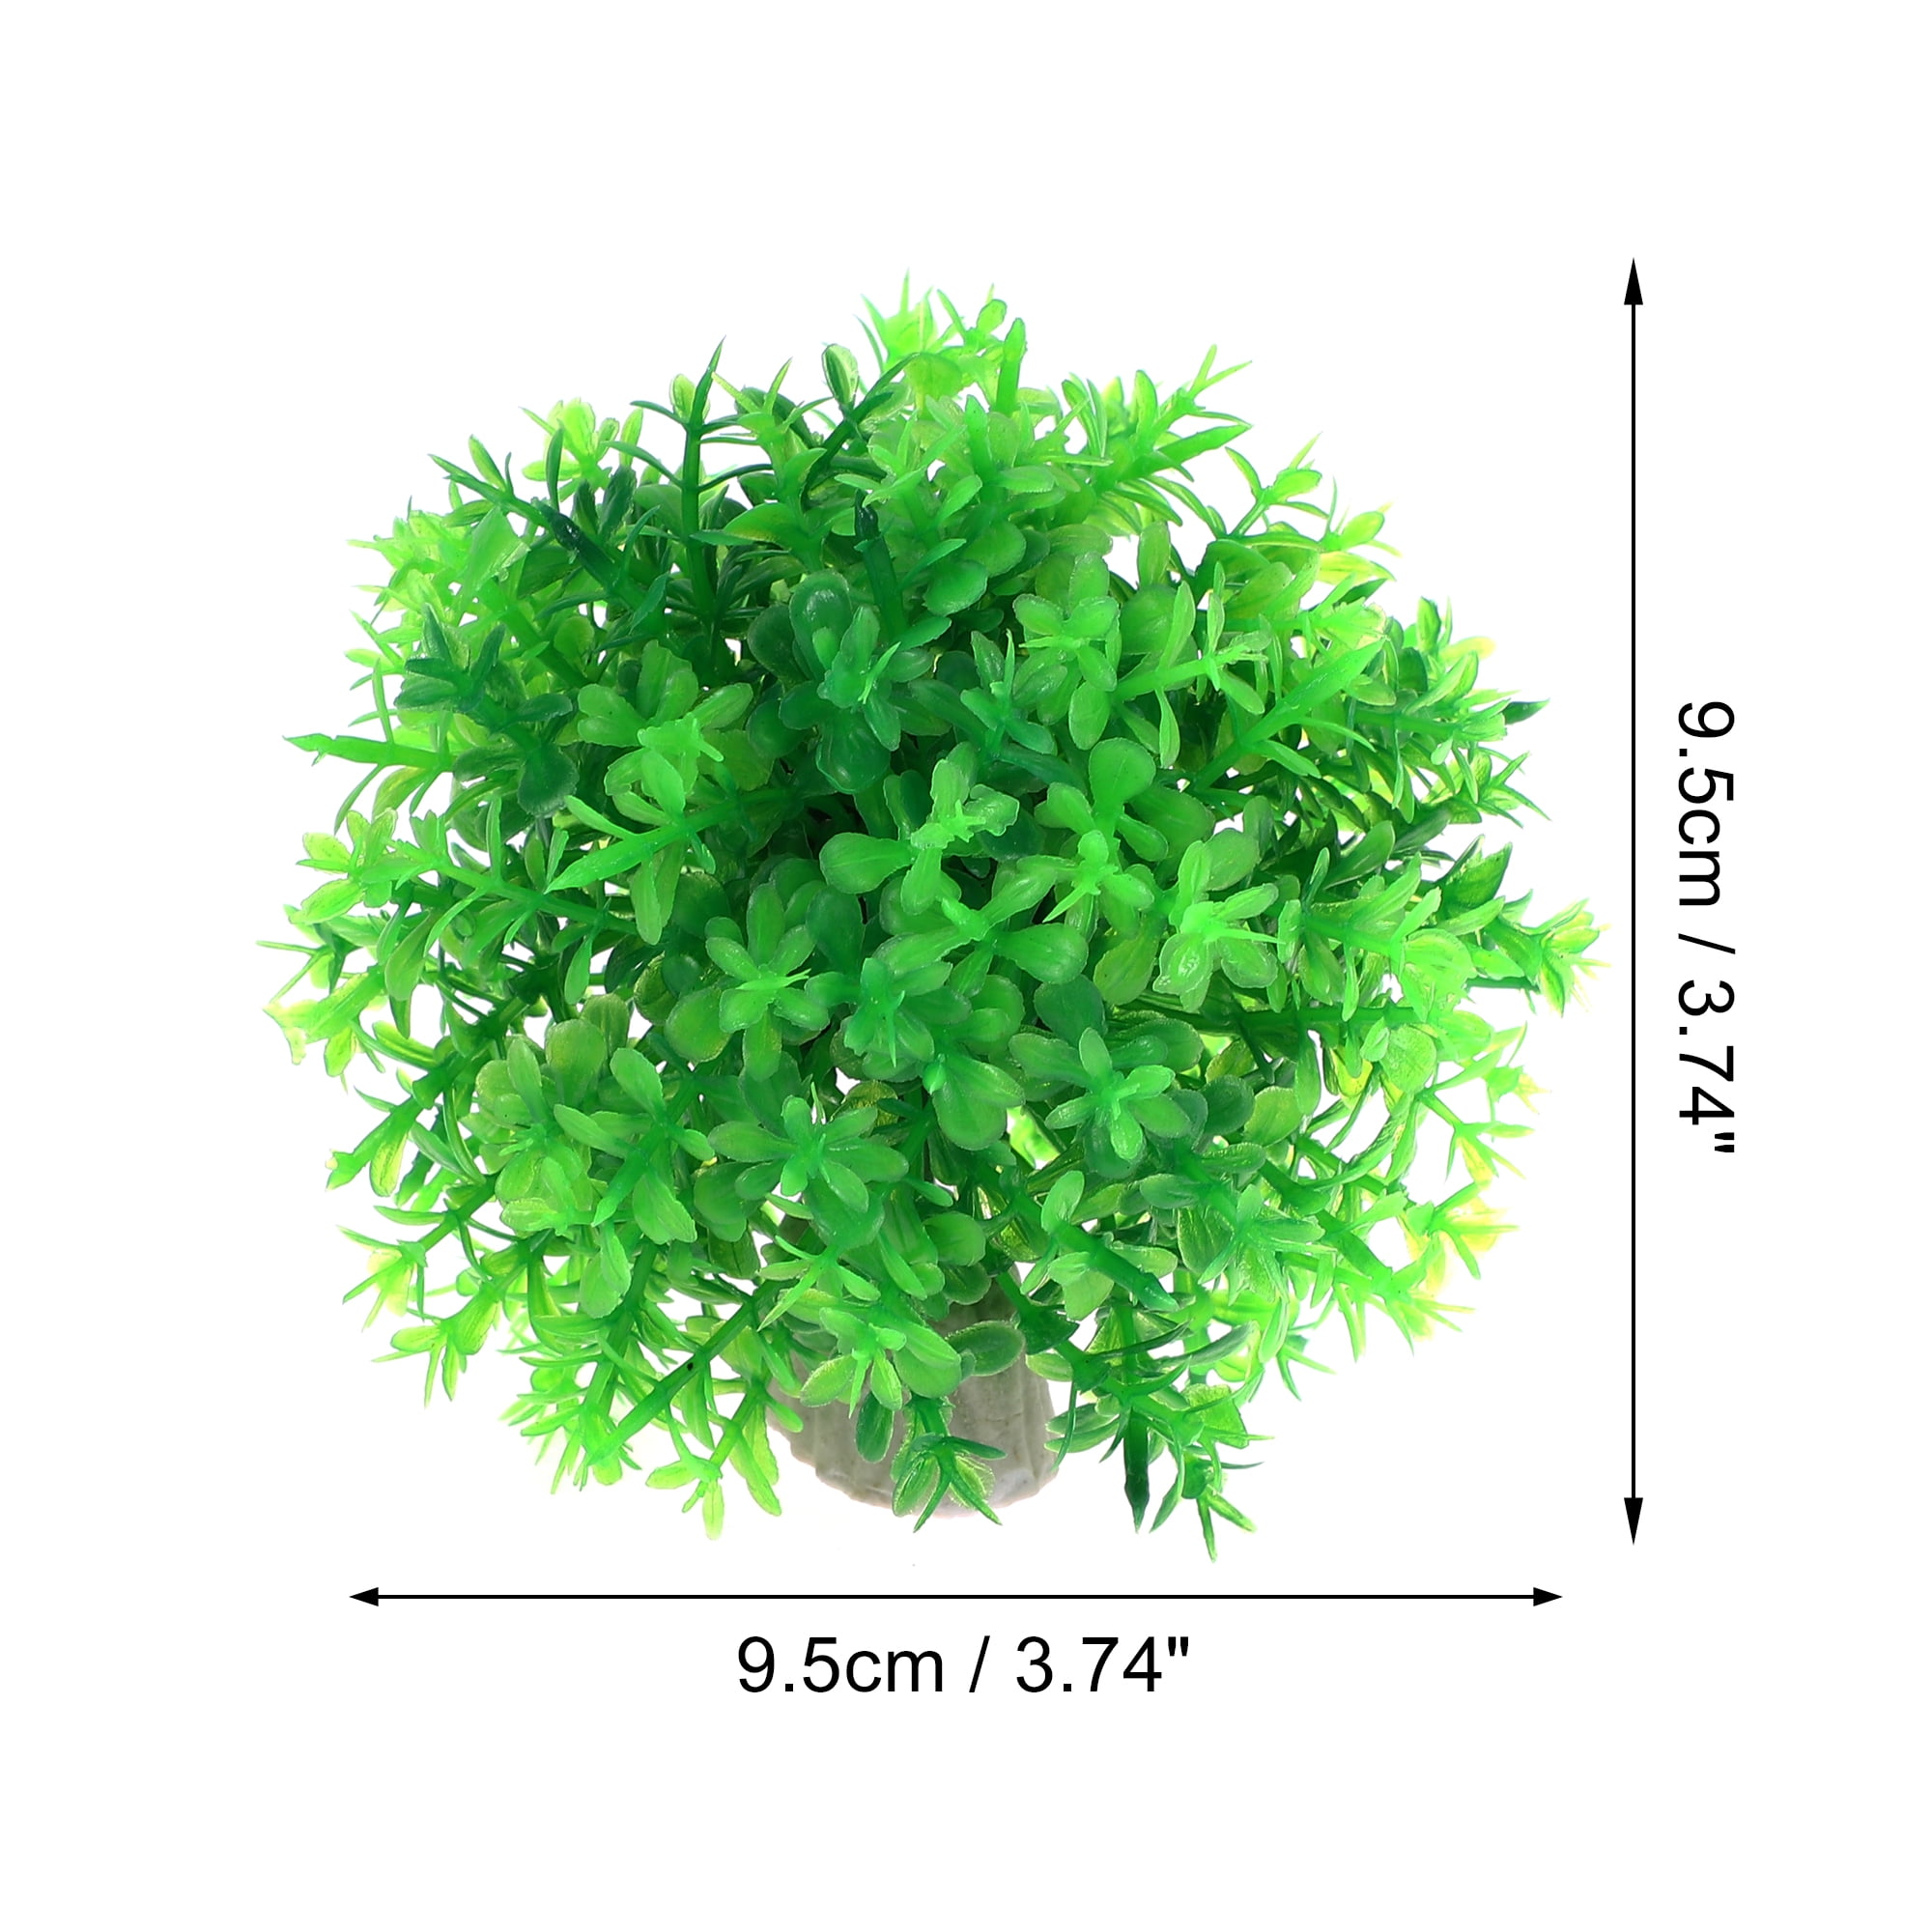 Unique Bargains Artificial Plastic Lawn for Fish Tank Landscape Decoration Green 6.3x5.91 inch 1 Pcs